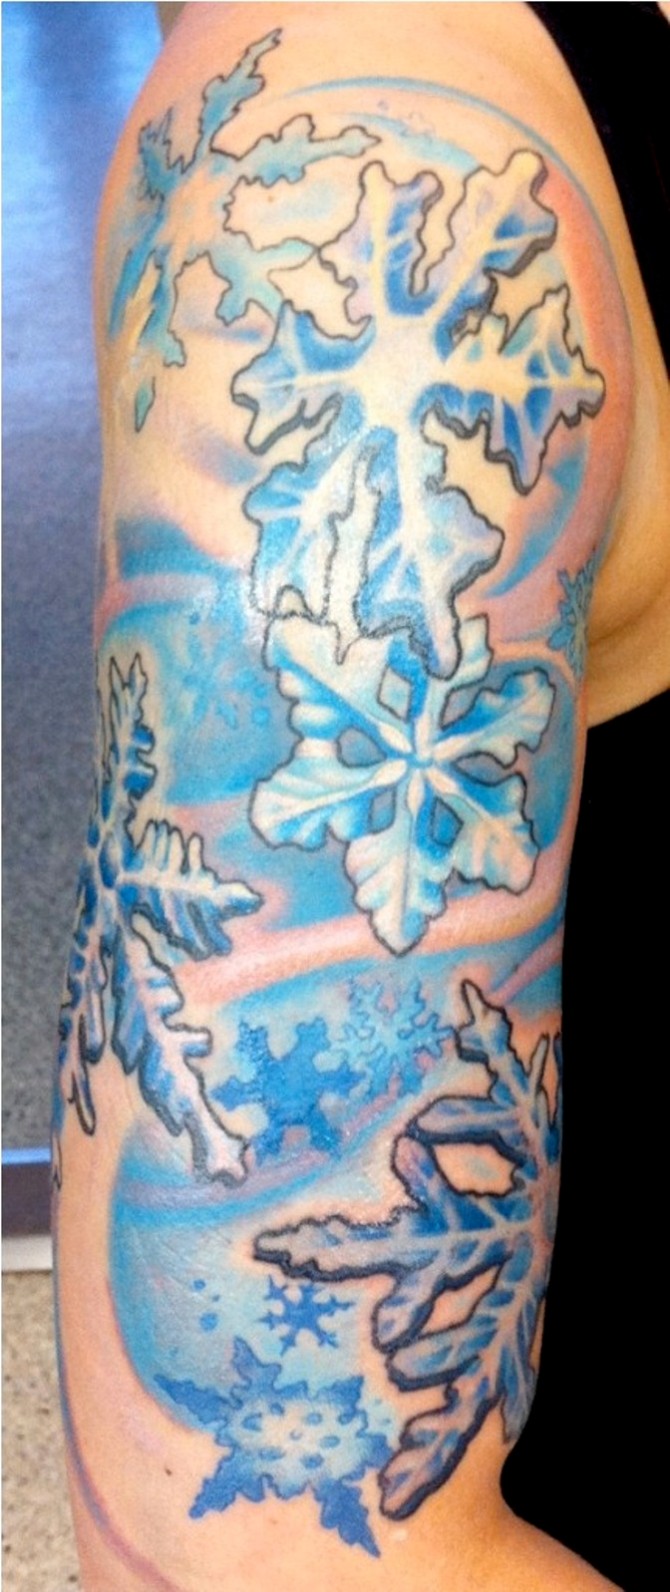 Snowflake Sleeve Tattoo